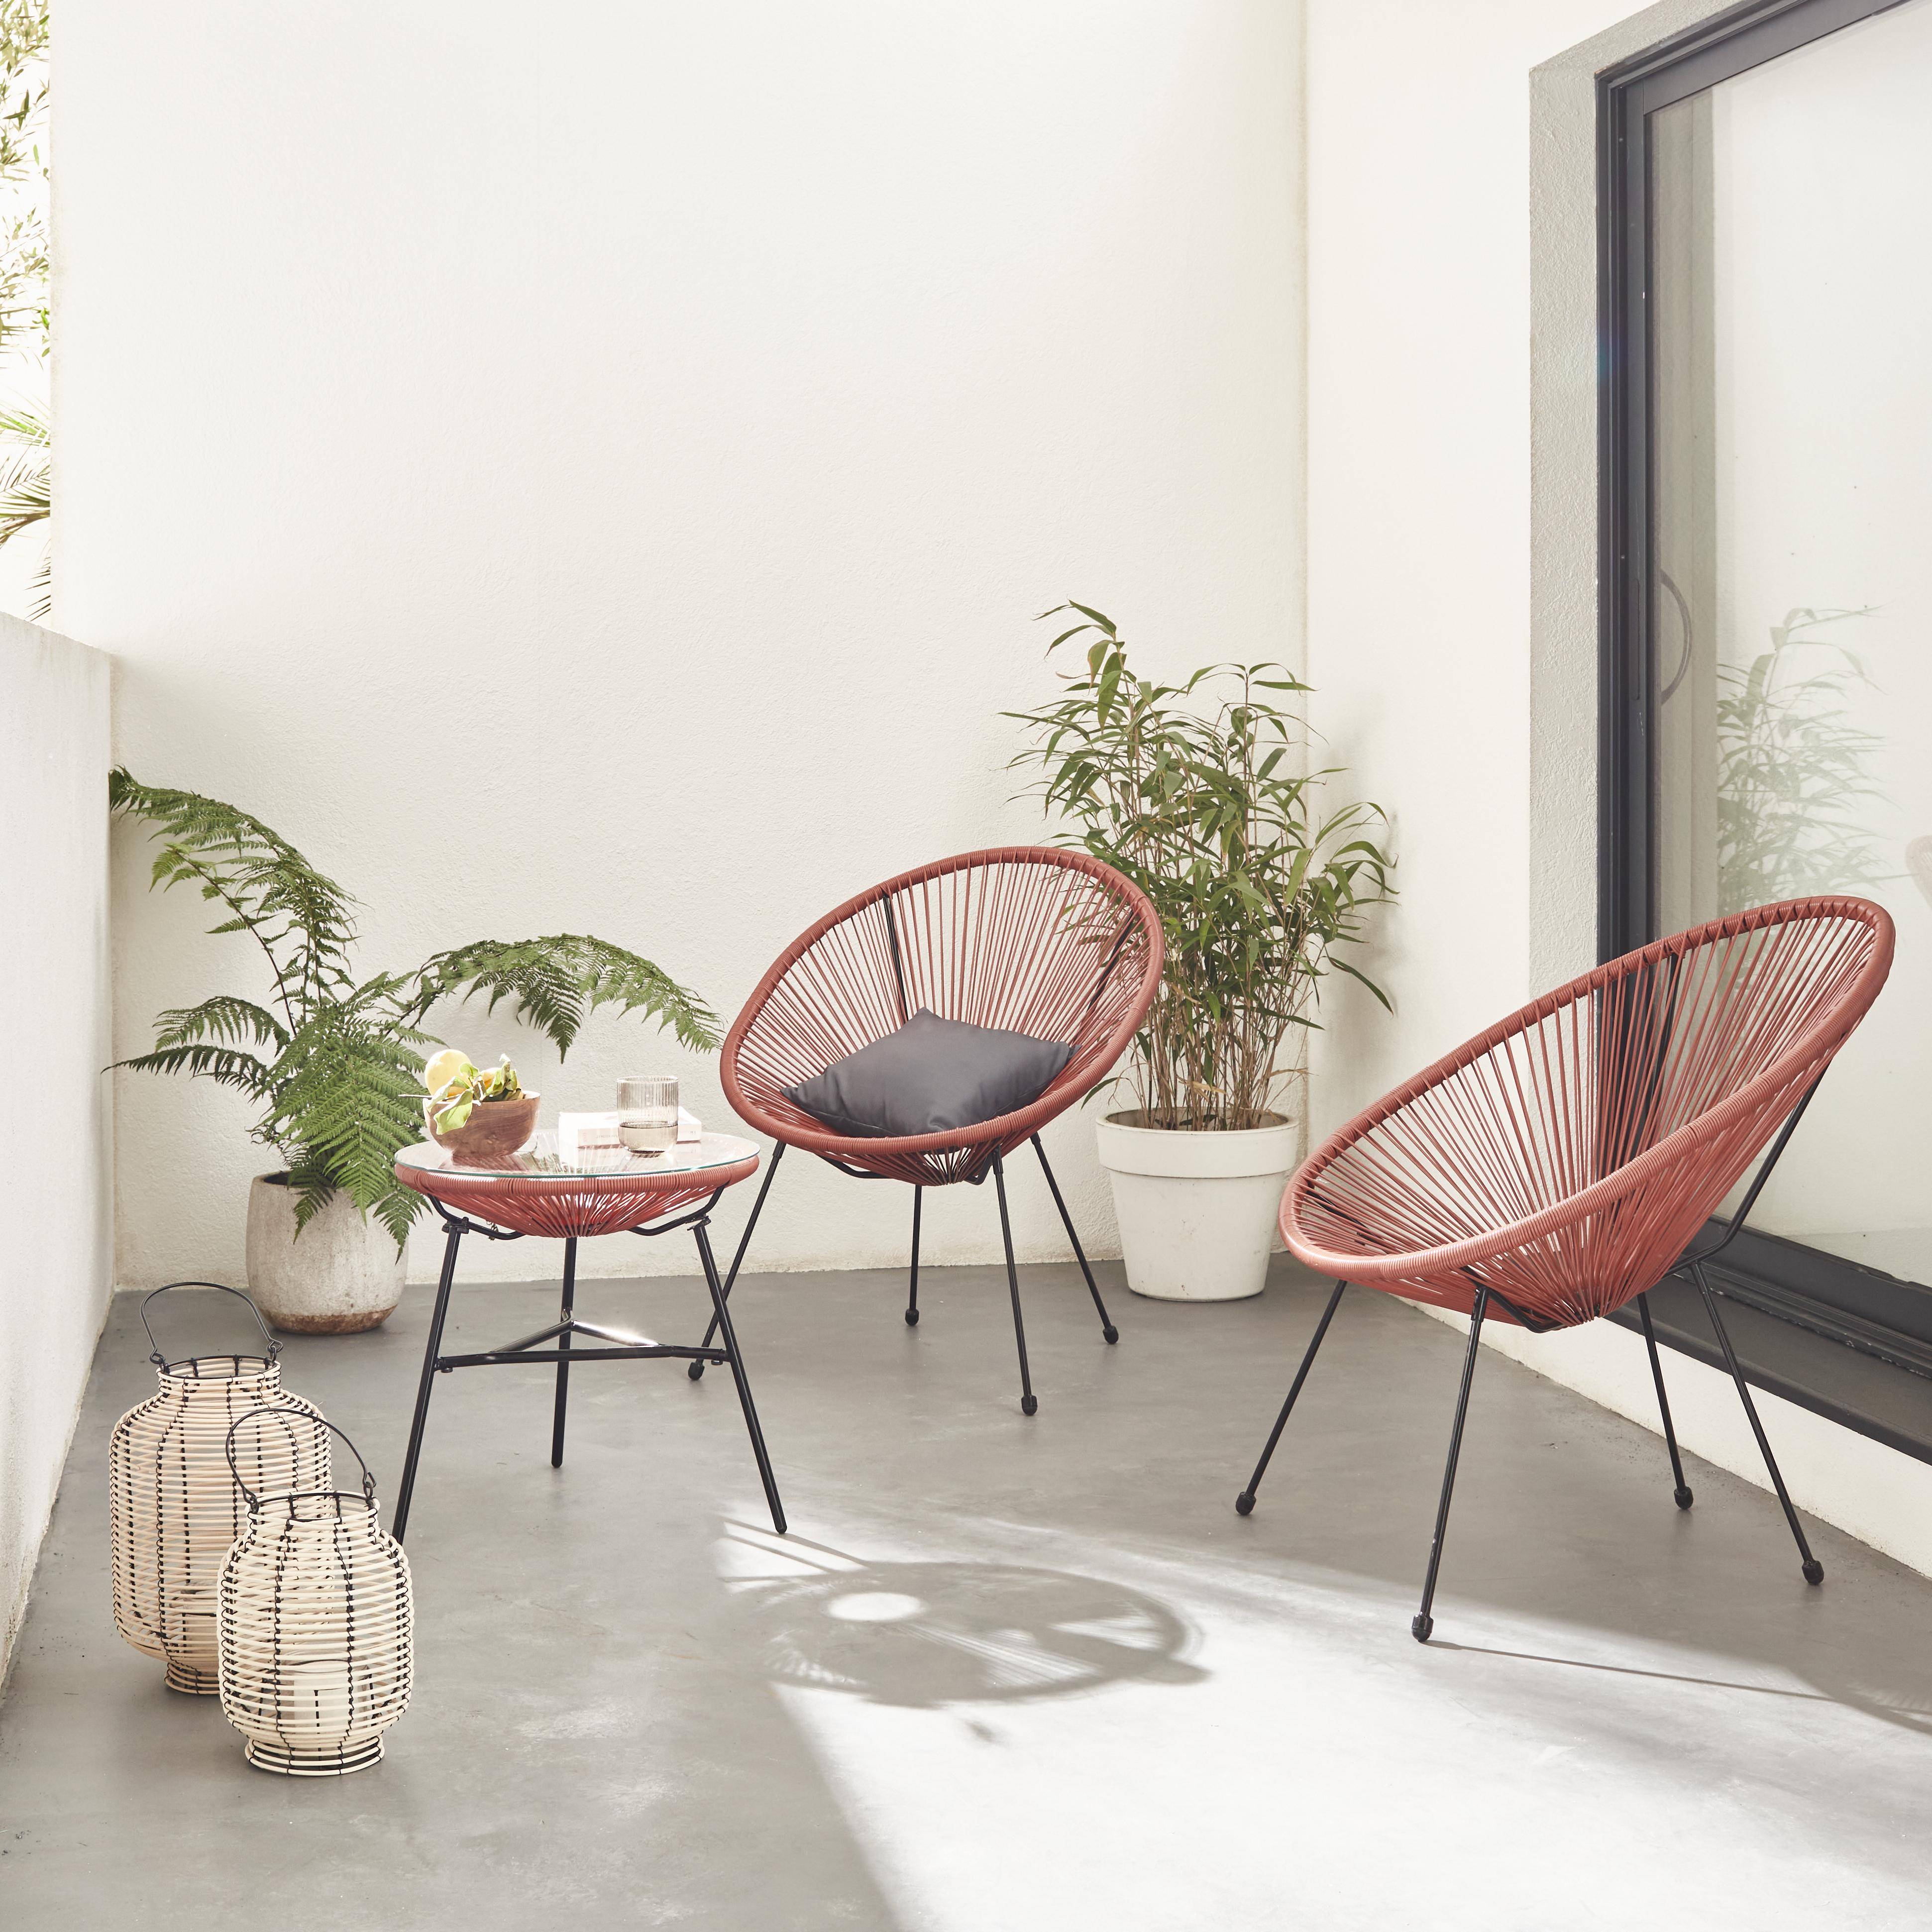 Set mit 2 eiförmigen ACAPULCO-Sesseln mit Beistelltisch - Terra Cotta - 4-beinige Sessel im Retro-Design, mit Couchtisch, Kunststoffschnur, innen / außen Photo1